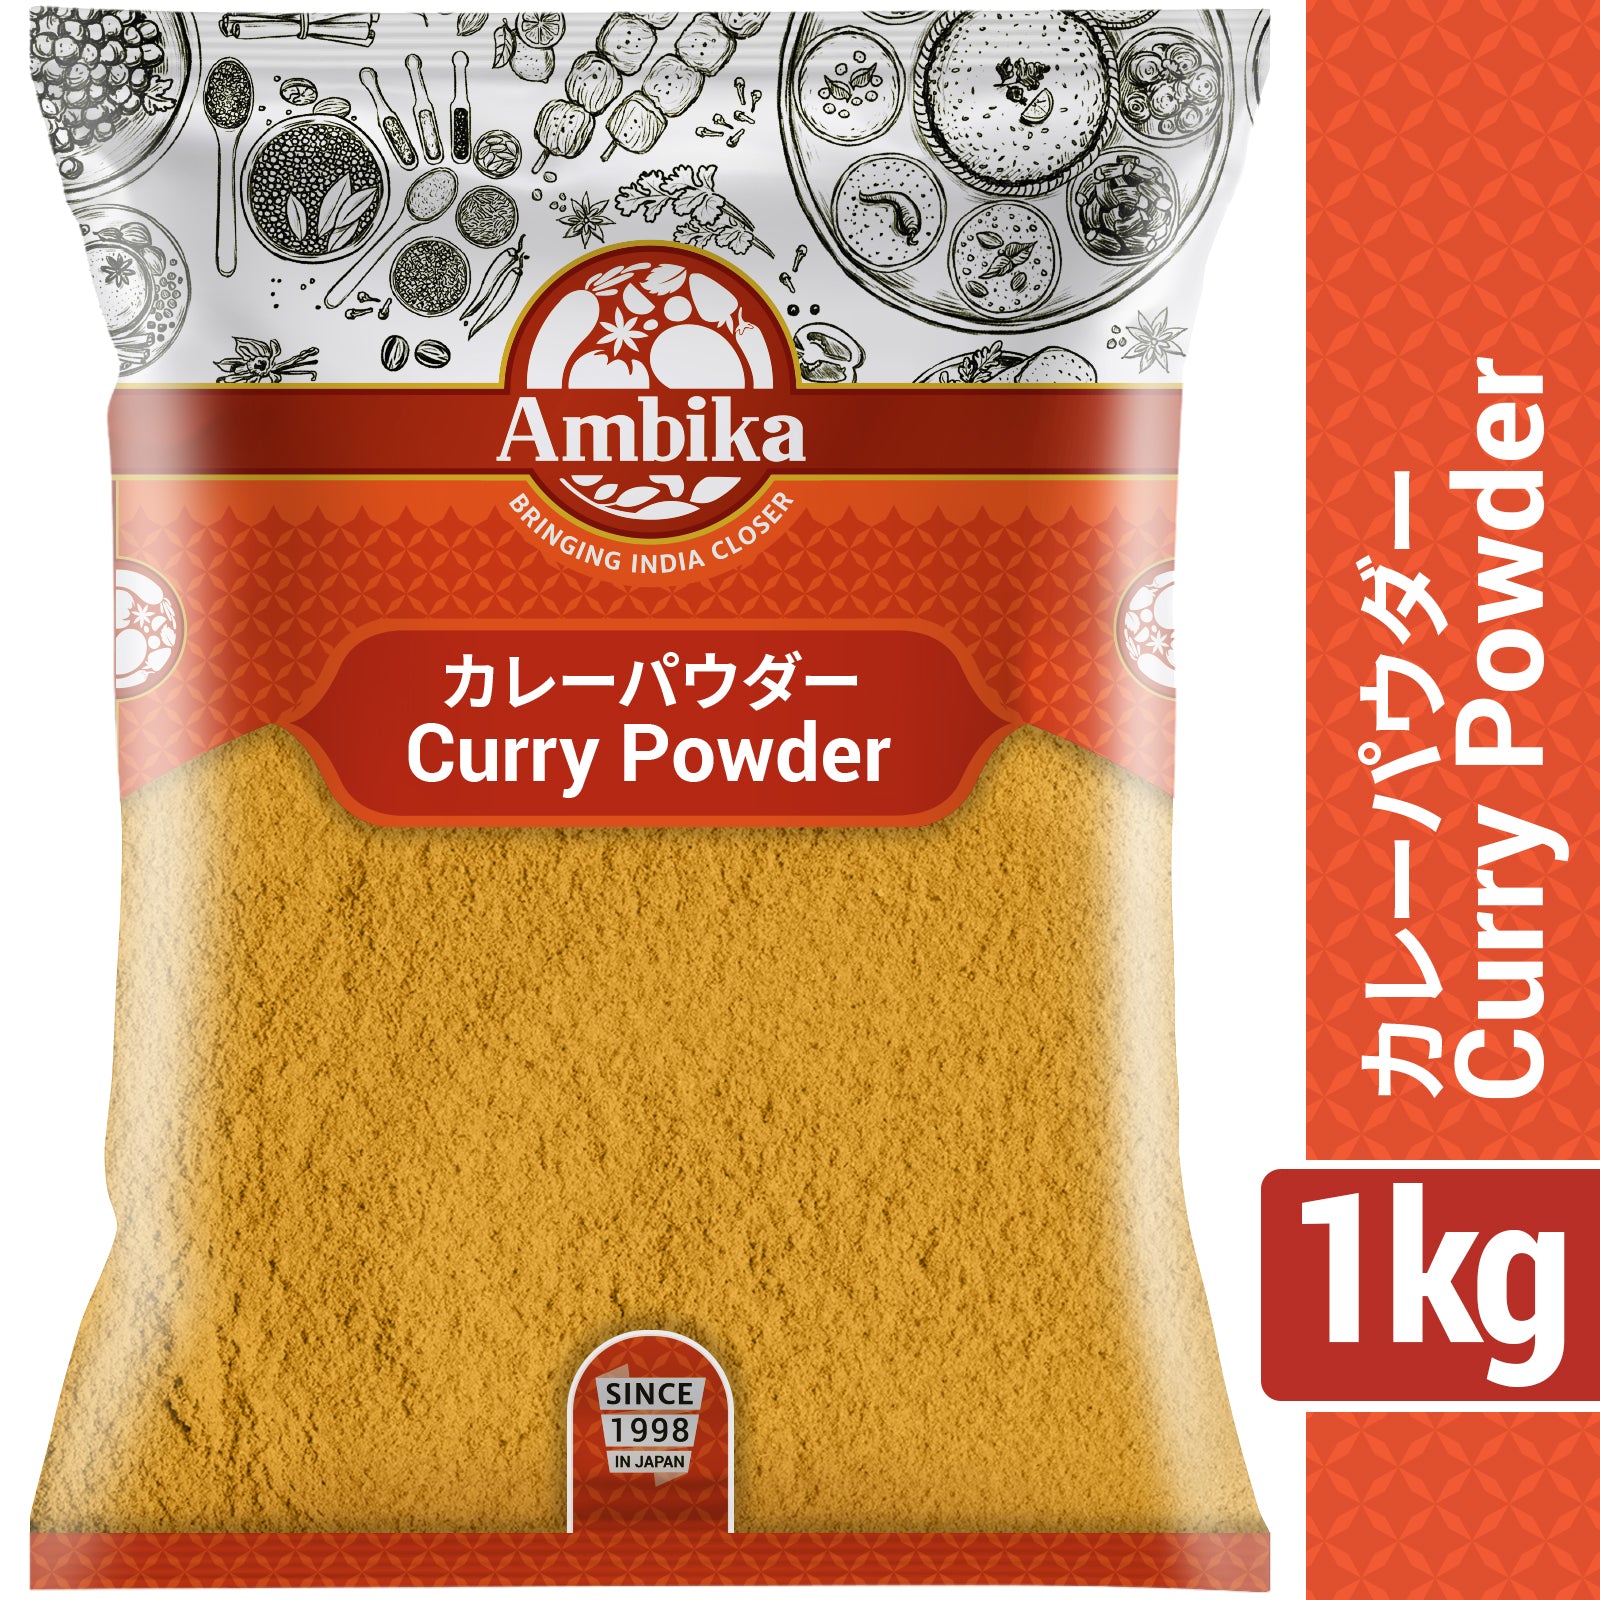 (Ambika) Curry Powder 1kg